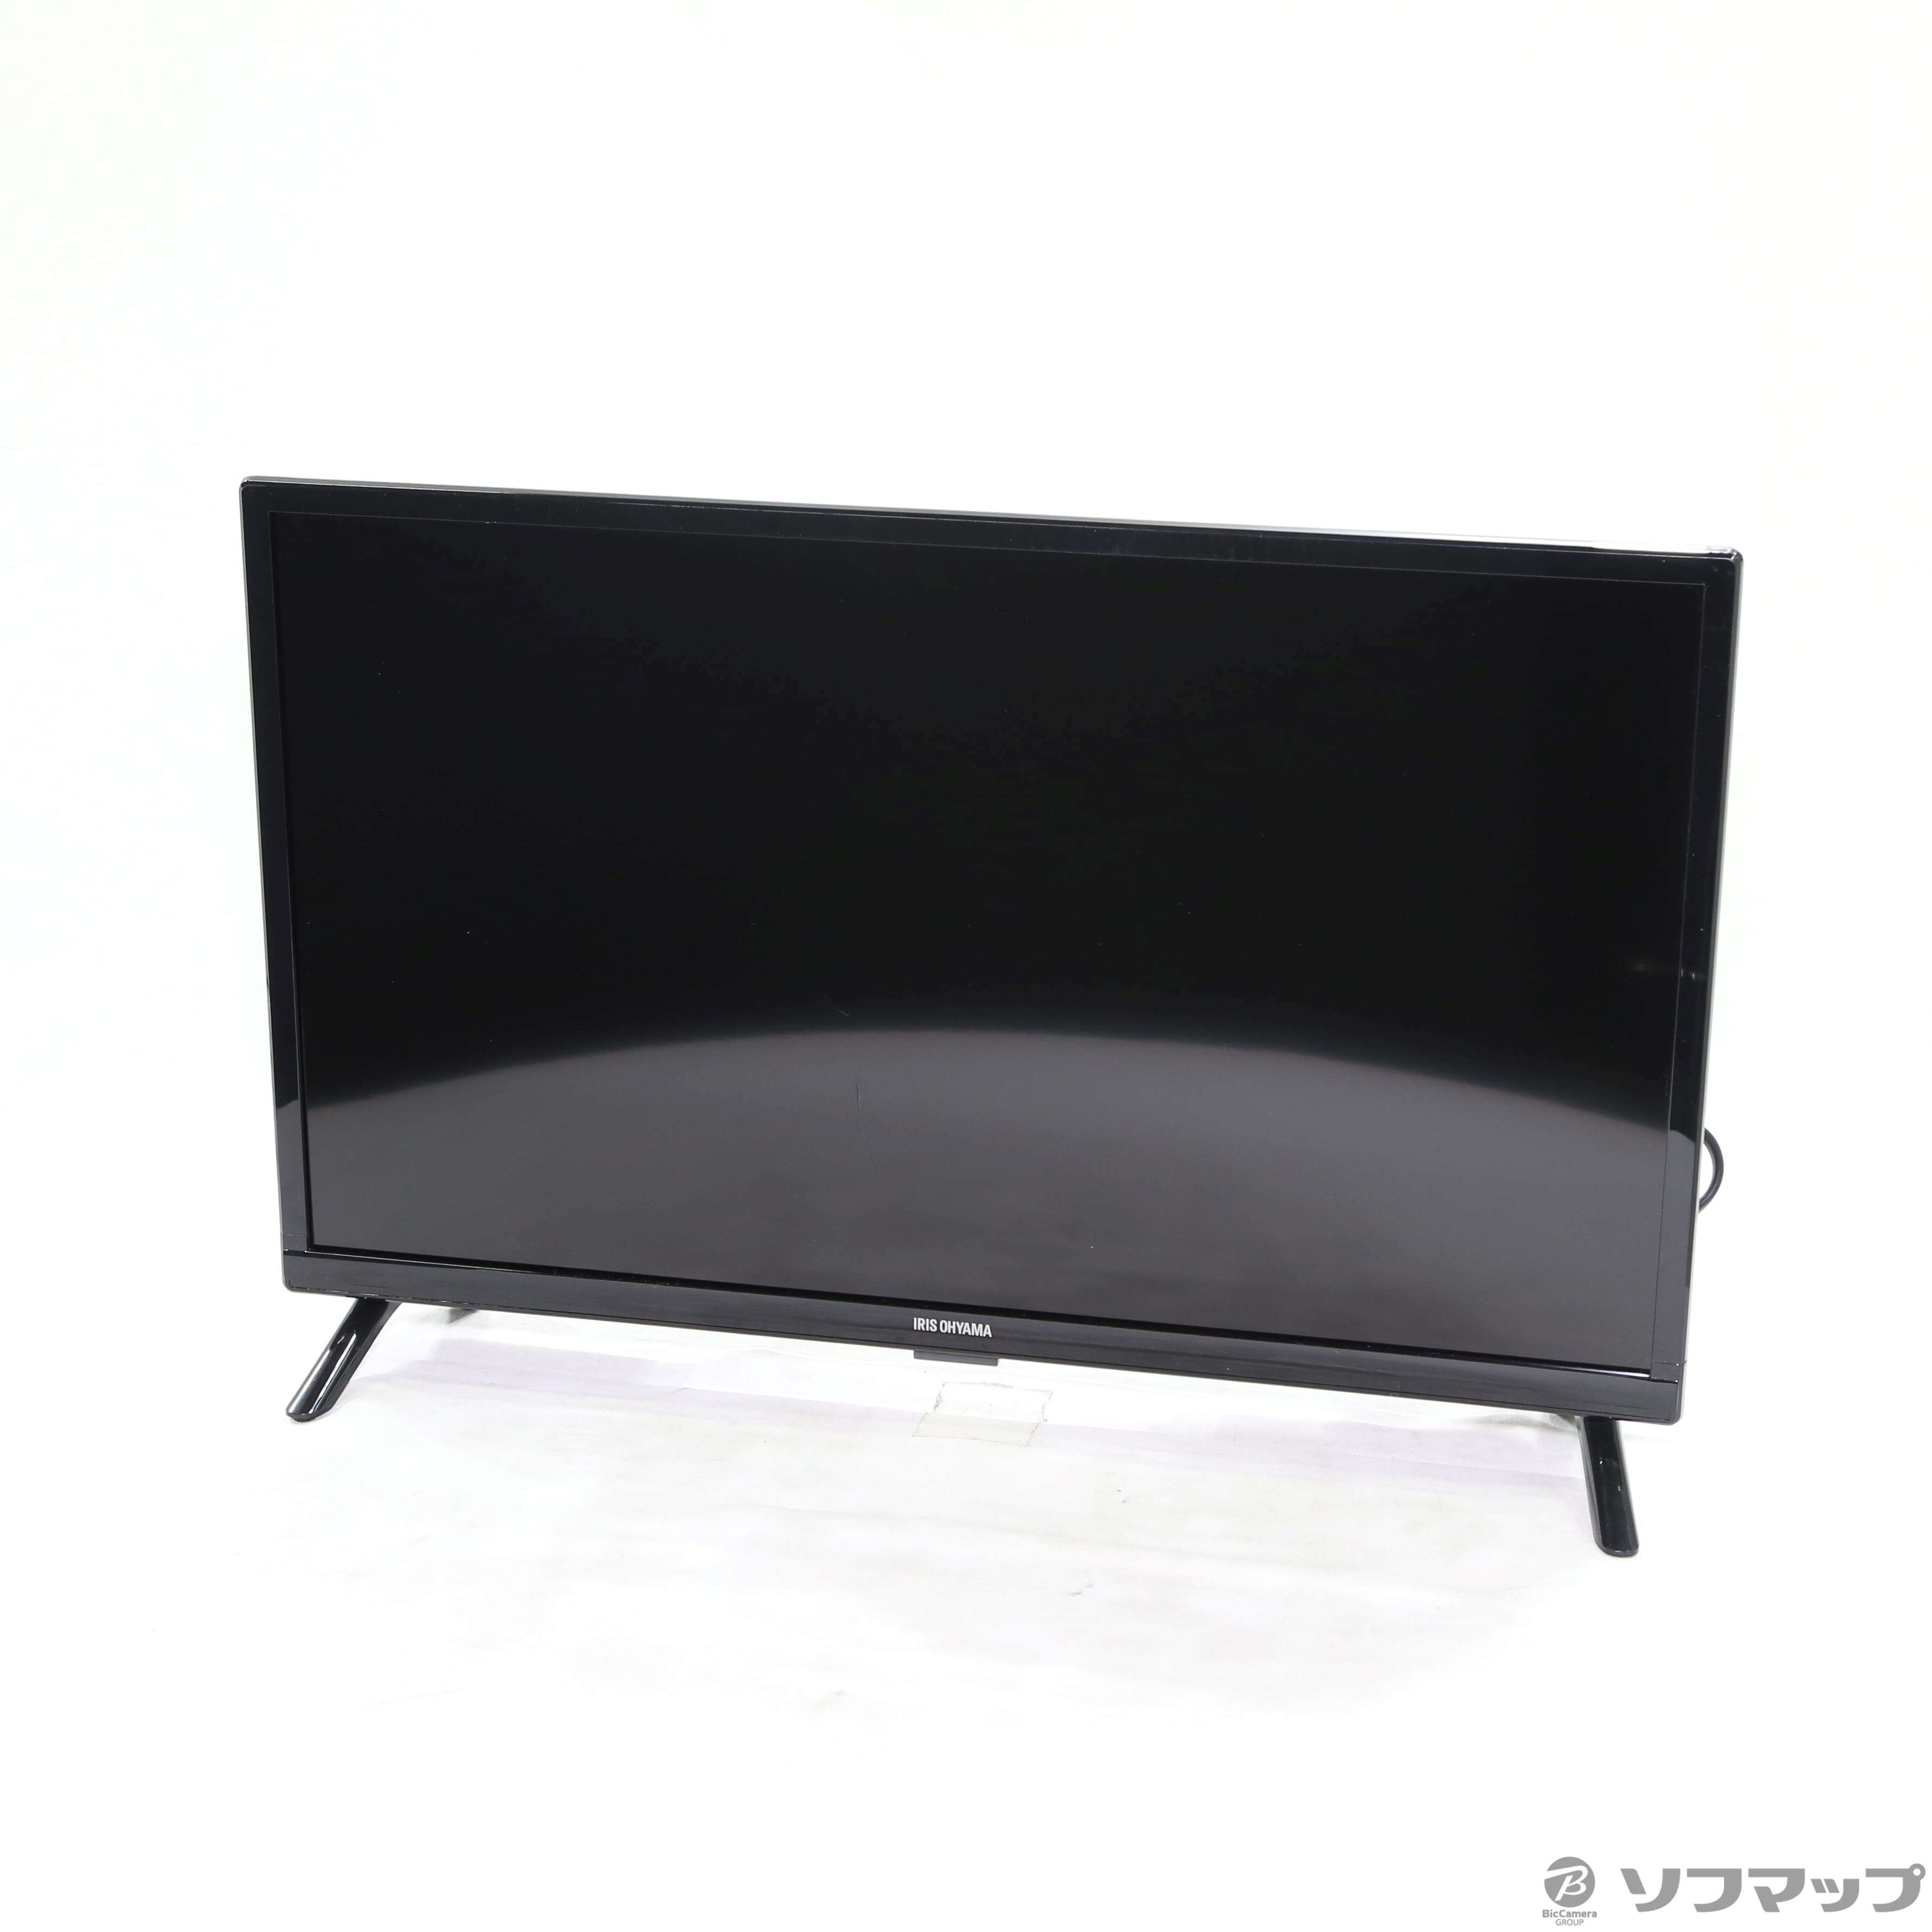 アイリスオーヤマハイビジョン液晶テレビ　24V型　IRIS 24WB10PB BLACK